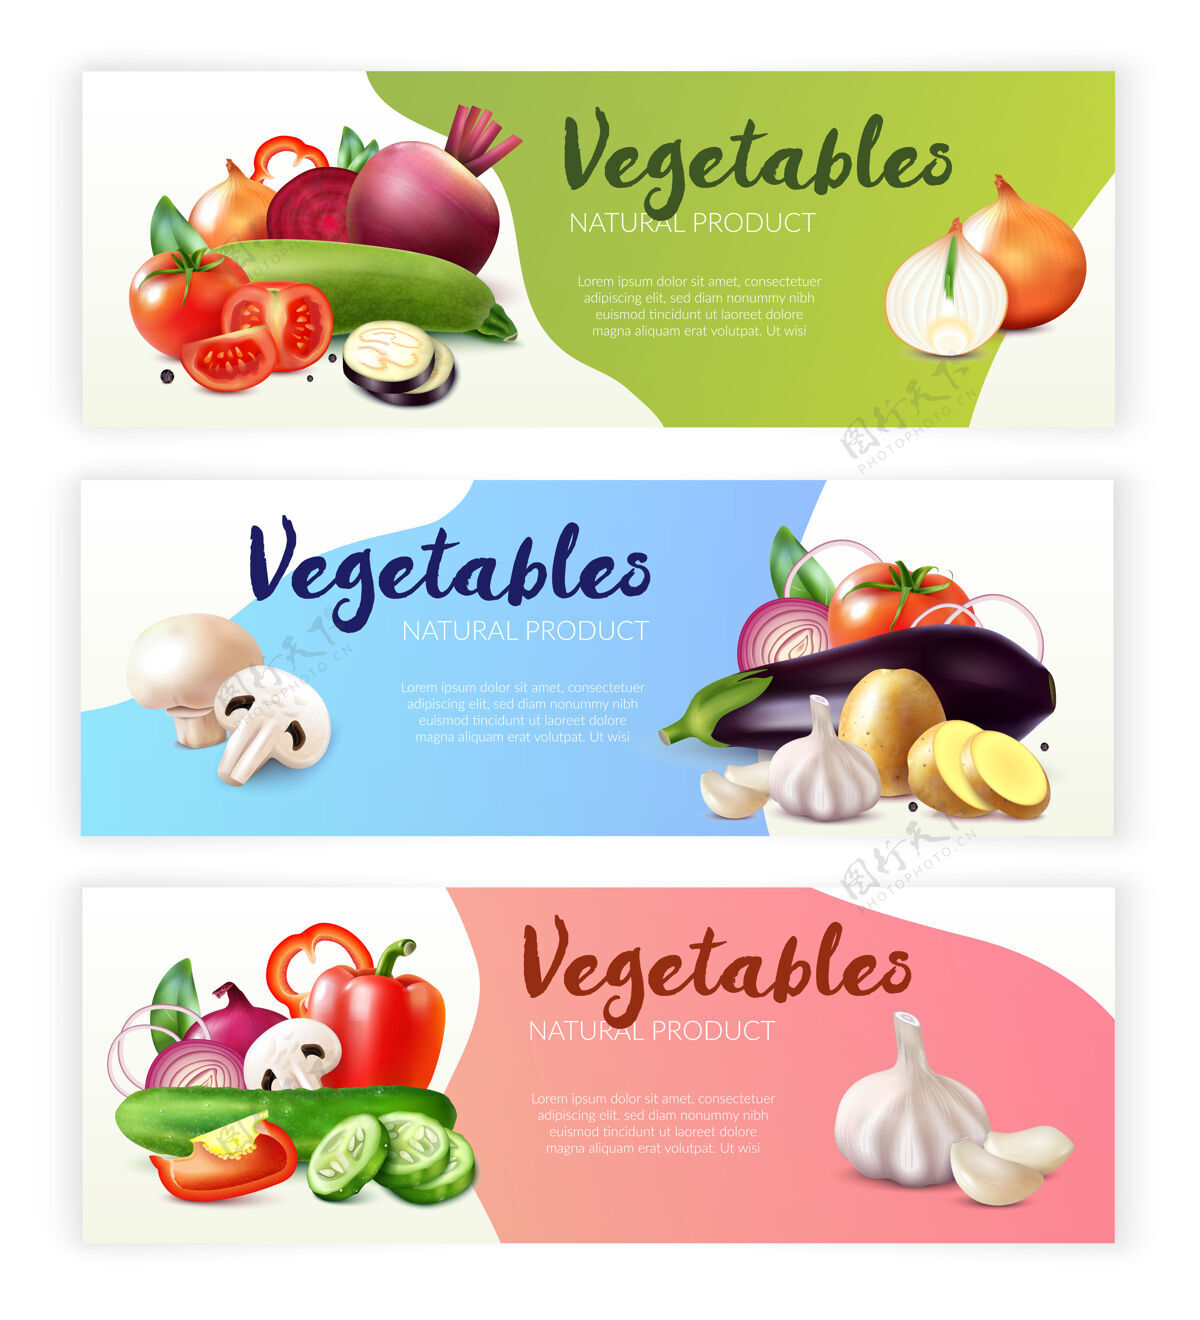 横幅现实蔬菜横幅收集与成熟的水果和可编辑的文本切片三个组成部分收藏横幅蔬菜